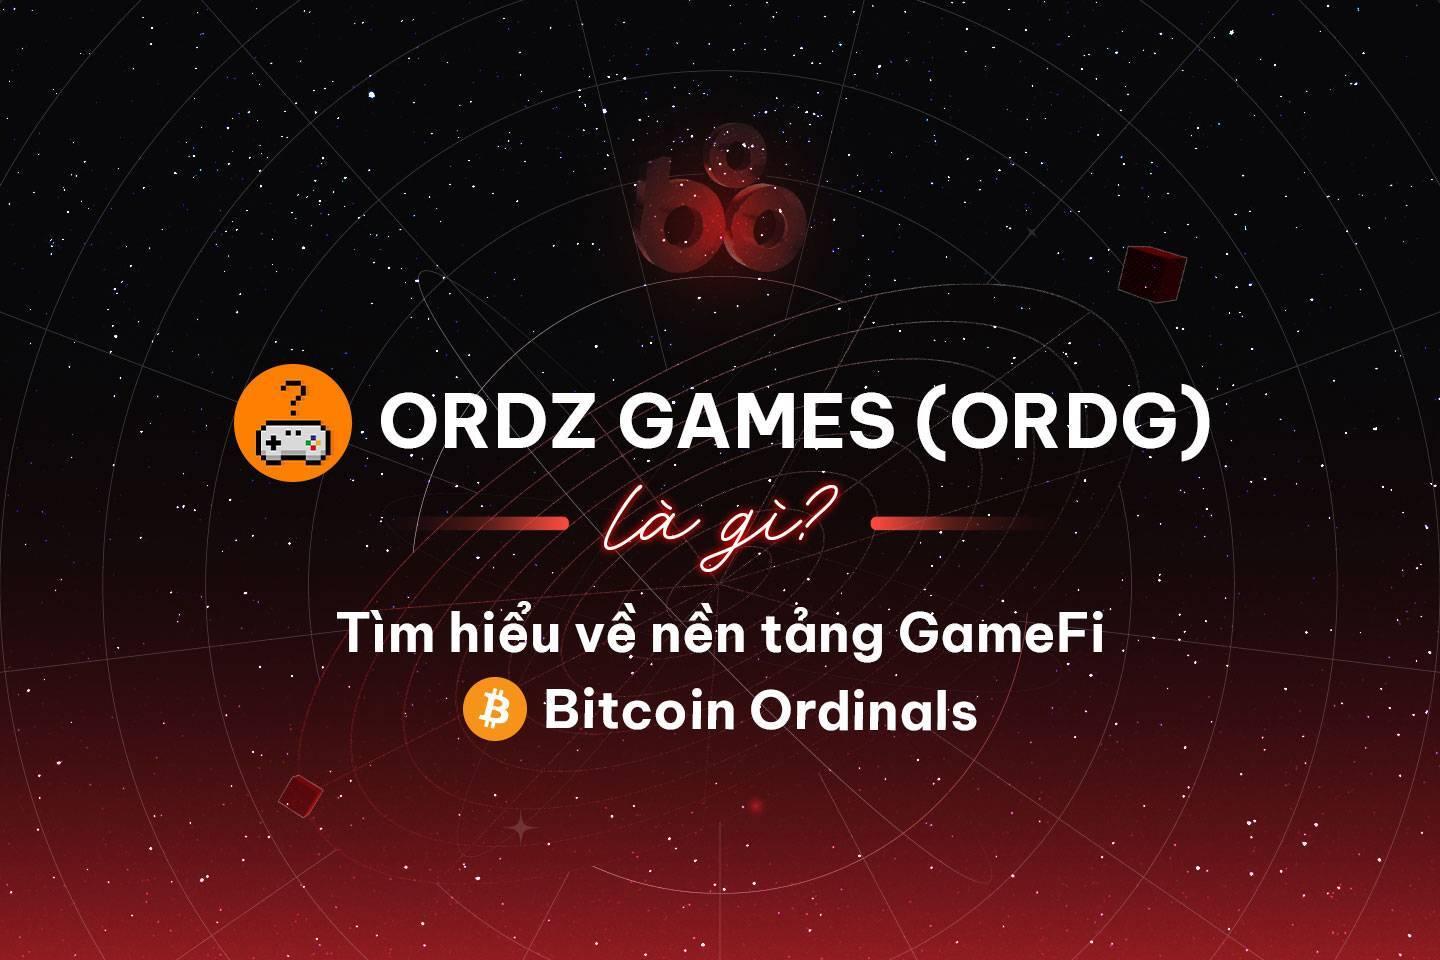 ordz-games-ordg-la-gi-tim-hieu-ve-nen-tang-gamefi-tren-bitcoin-ordinals